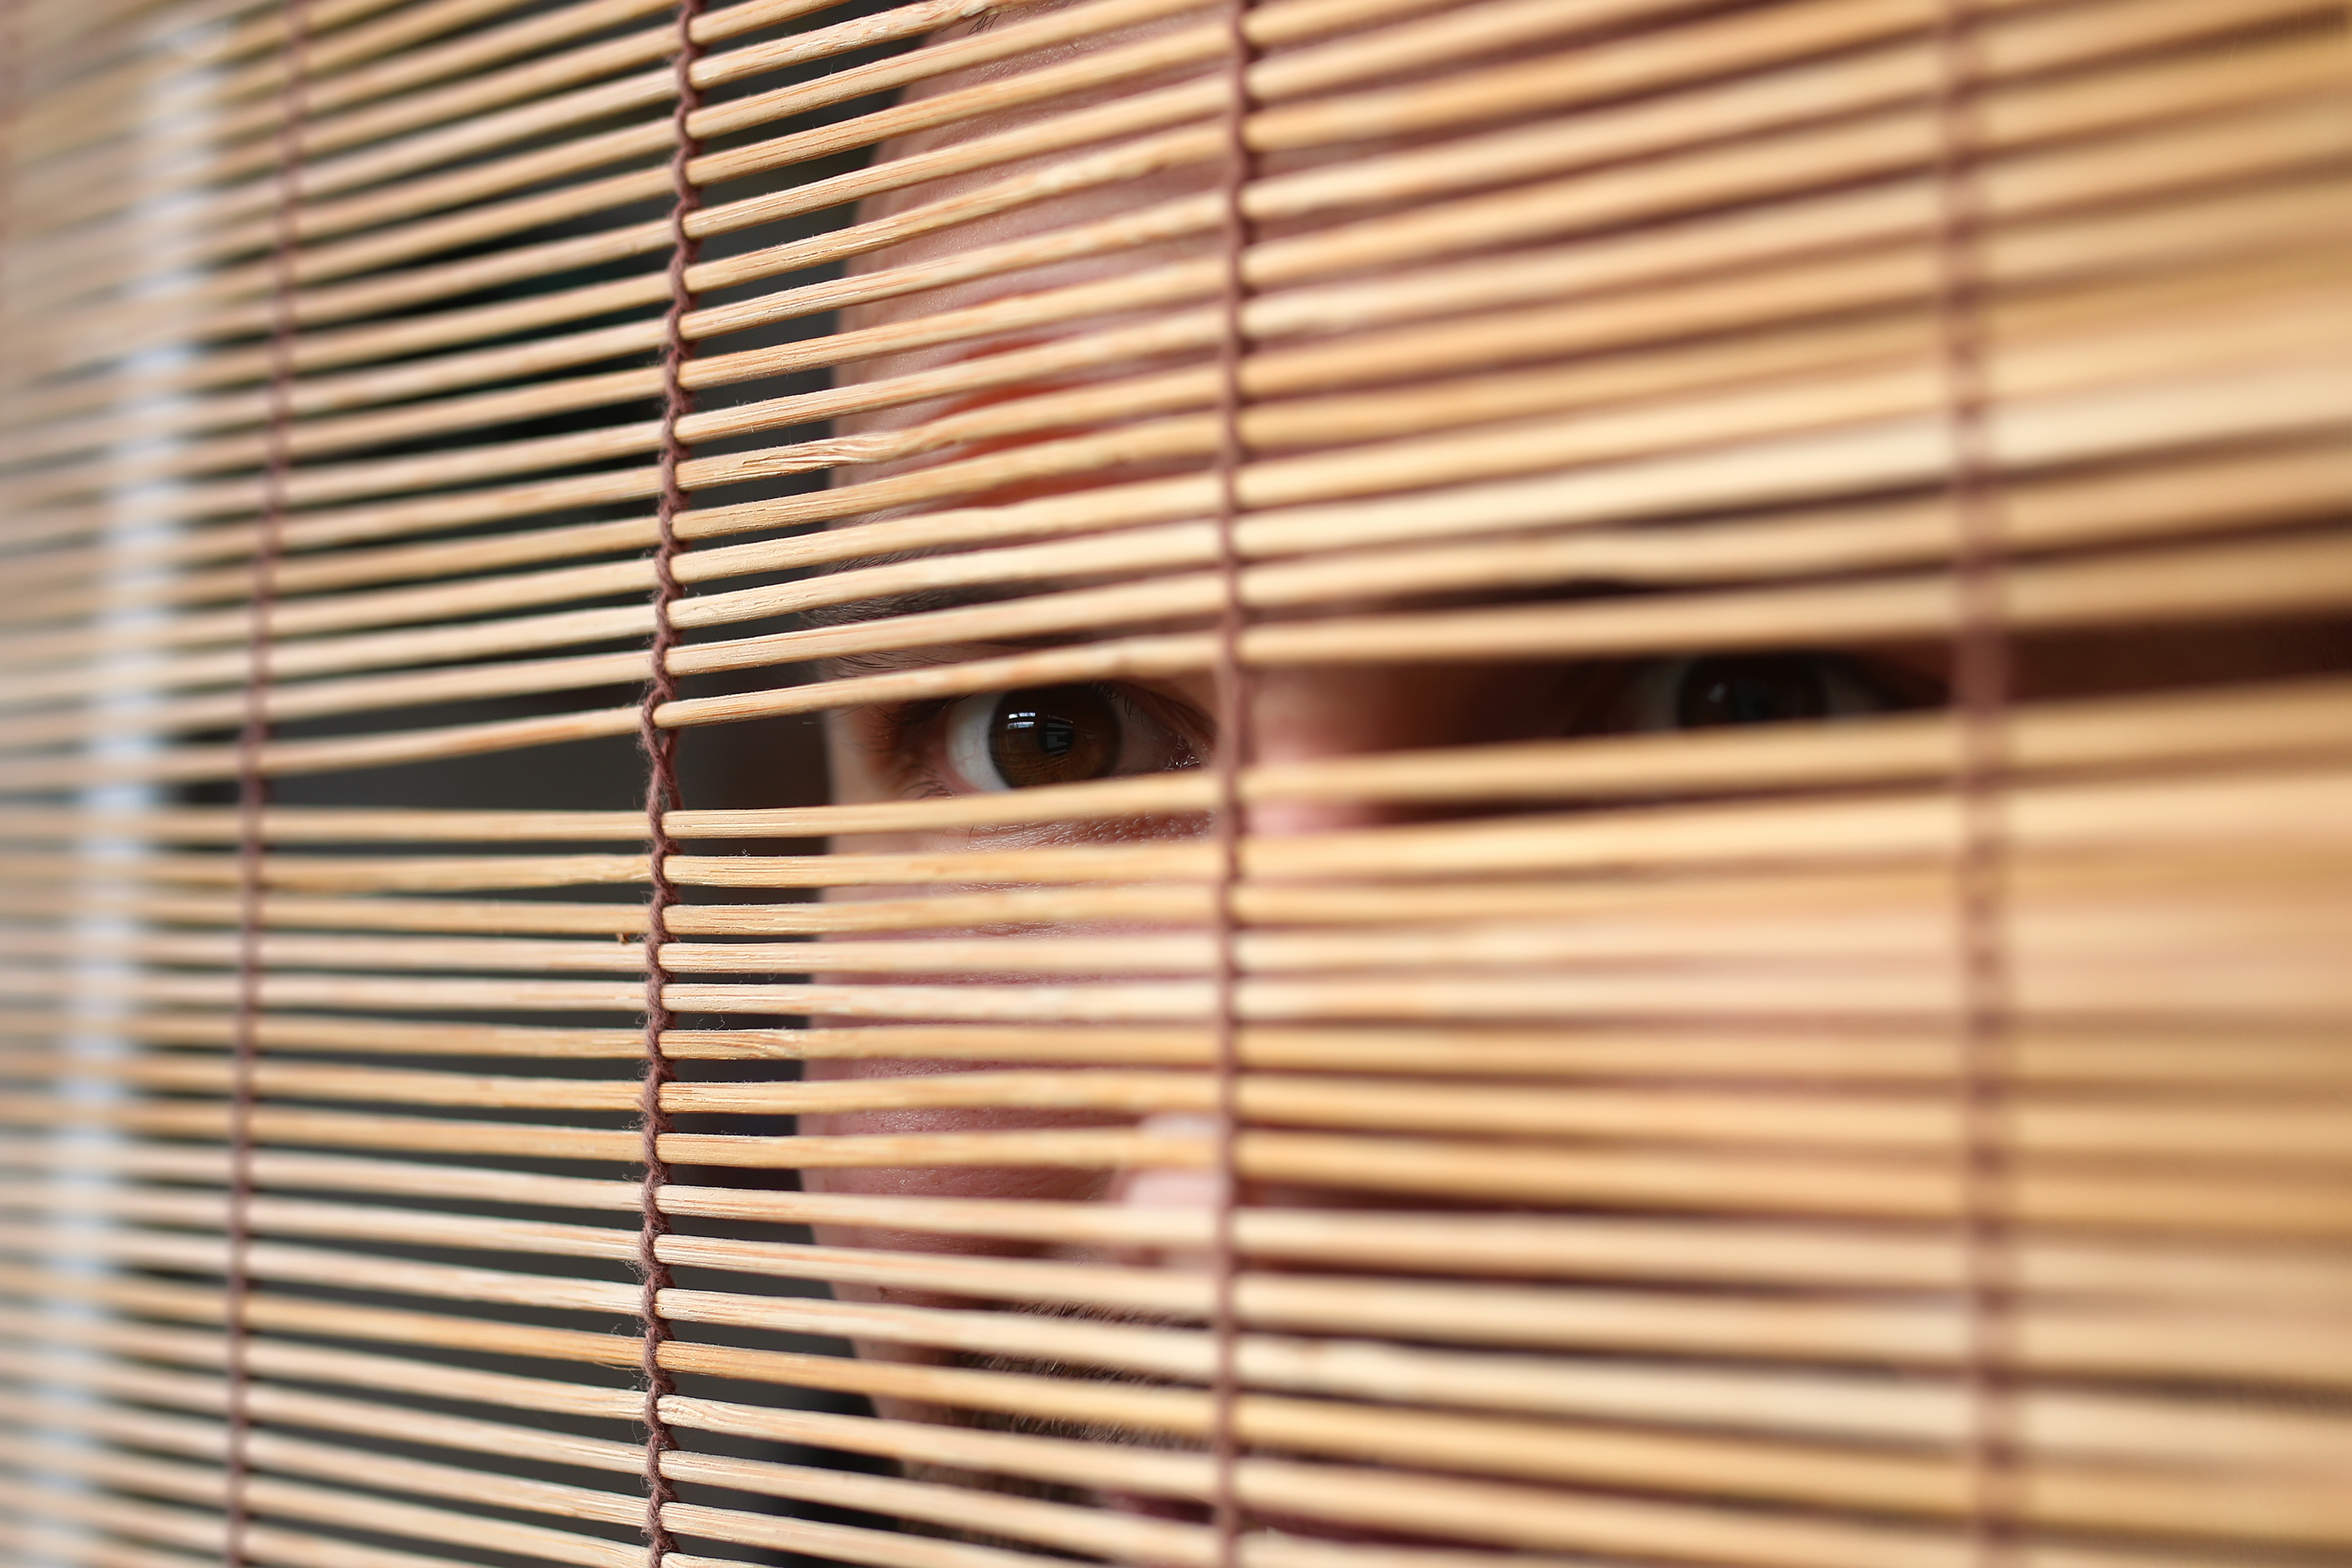 Peeping Tom, voyeurism or prying penalties in NSW